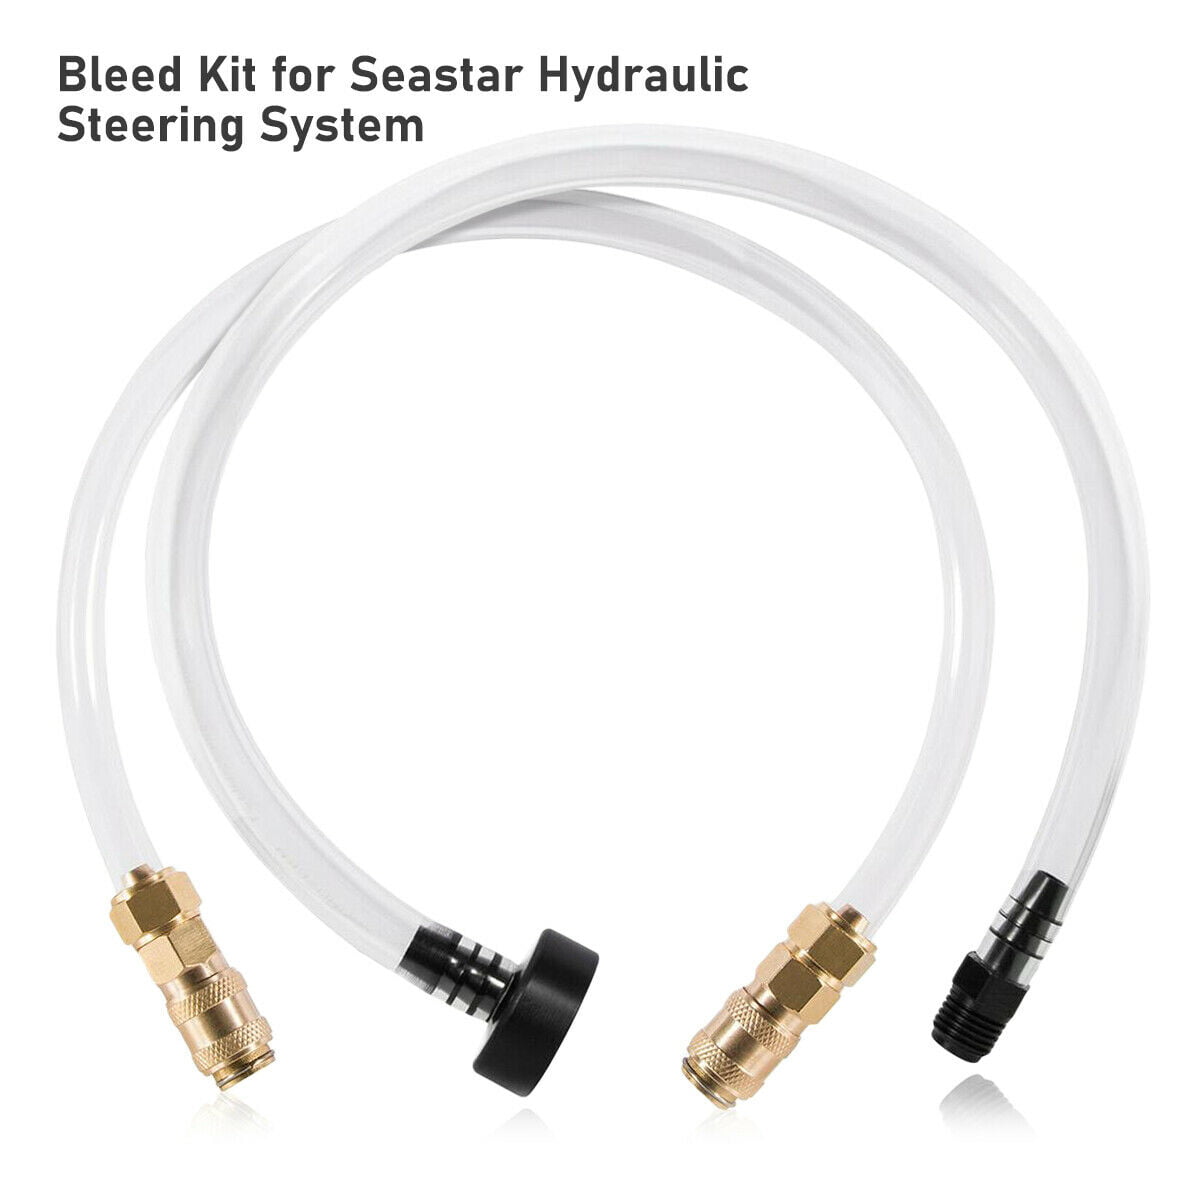 Bleed Kit Filler Kit For Seastar Hydraulic Steering Systems Bridge Tube & Hose 